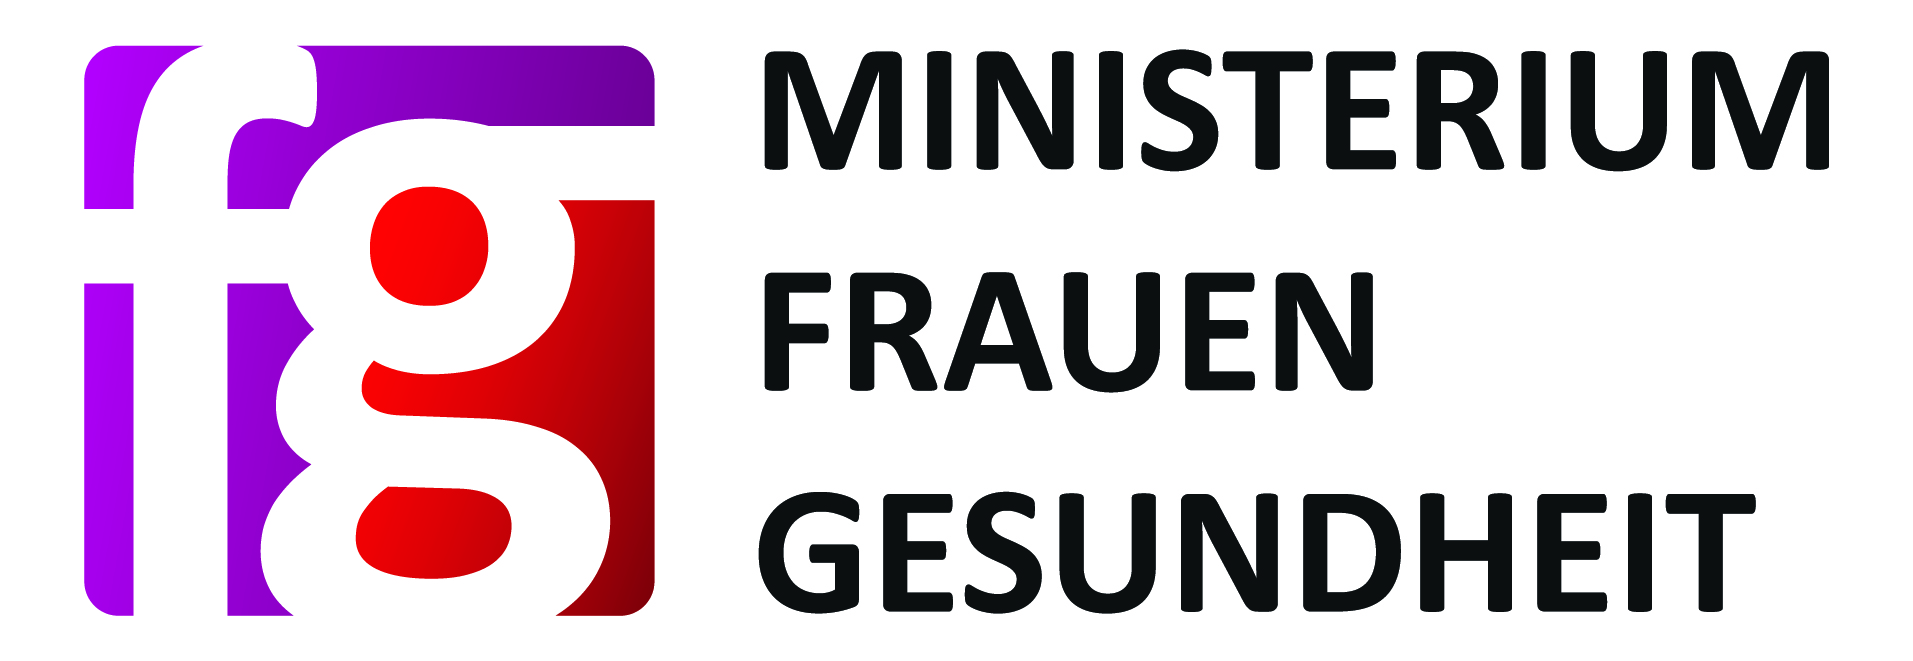 Logo Bundesministerium für Frauen und Gesundheit